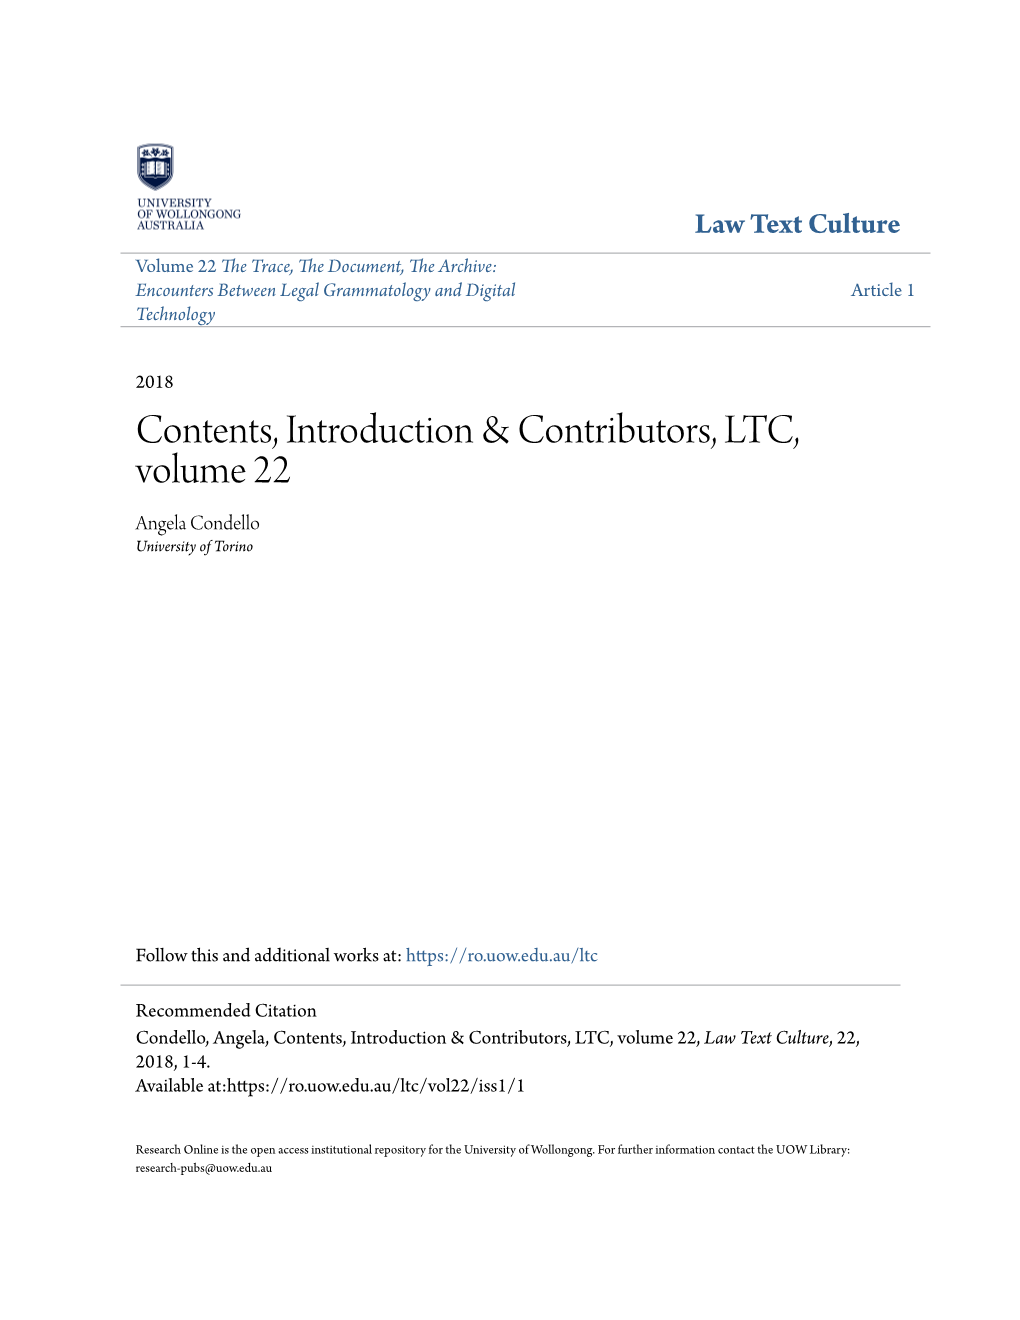 Contents, Introduction & Contributors, LTC, Volume 22